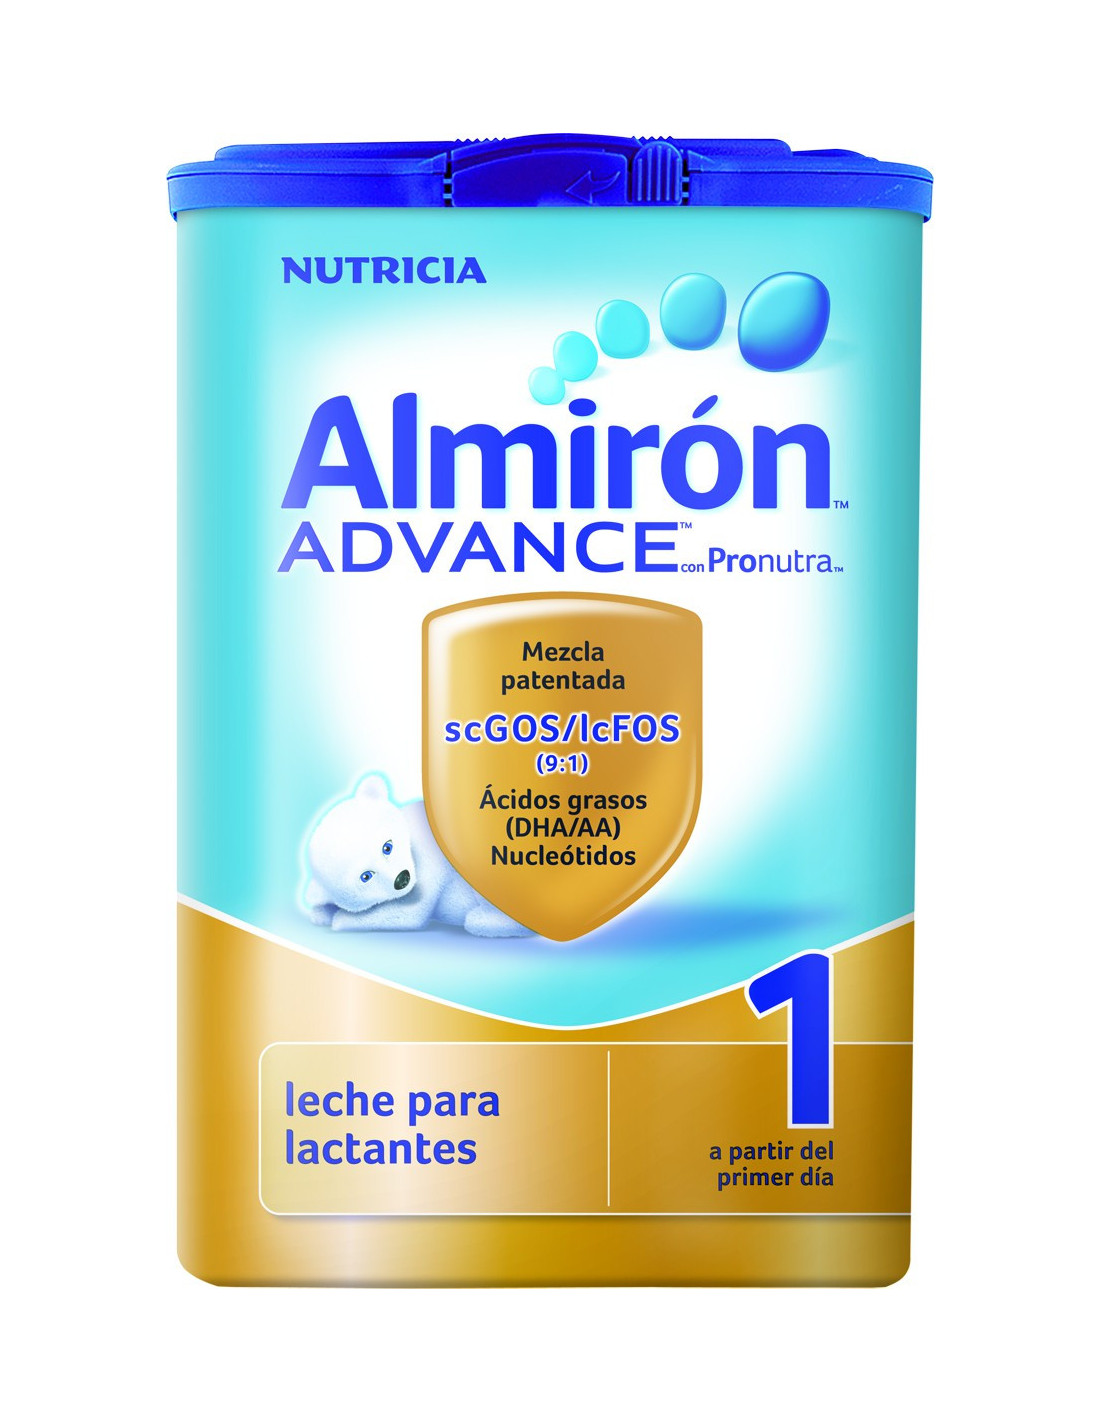 Almirón advance 1 - Nutricia